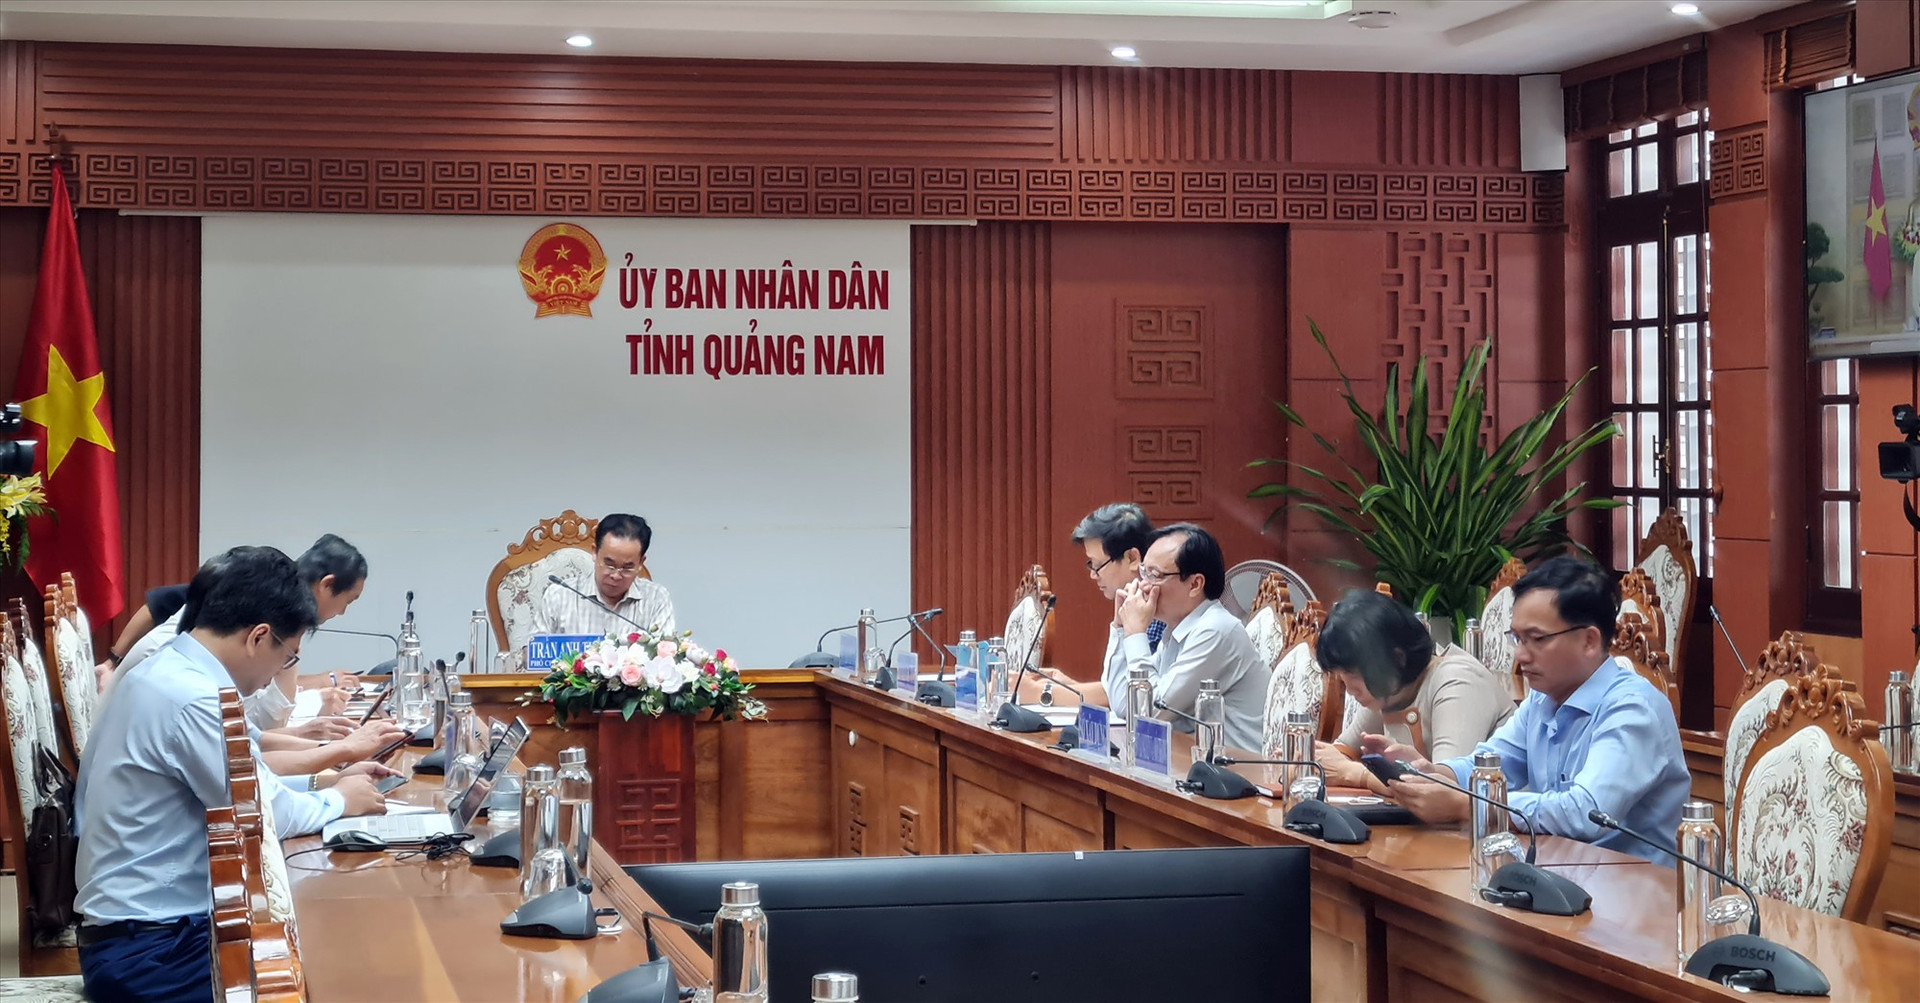 Điểm cầu Quảng Nam do Phó Chủ tịch UBND tỉnh Trần Anh Tuấn chủ trì. Ảnh: D.L